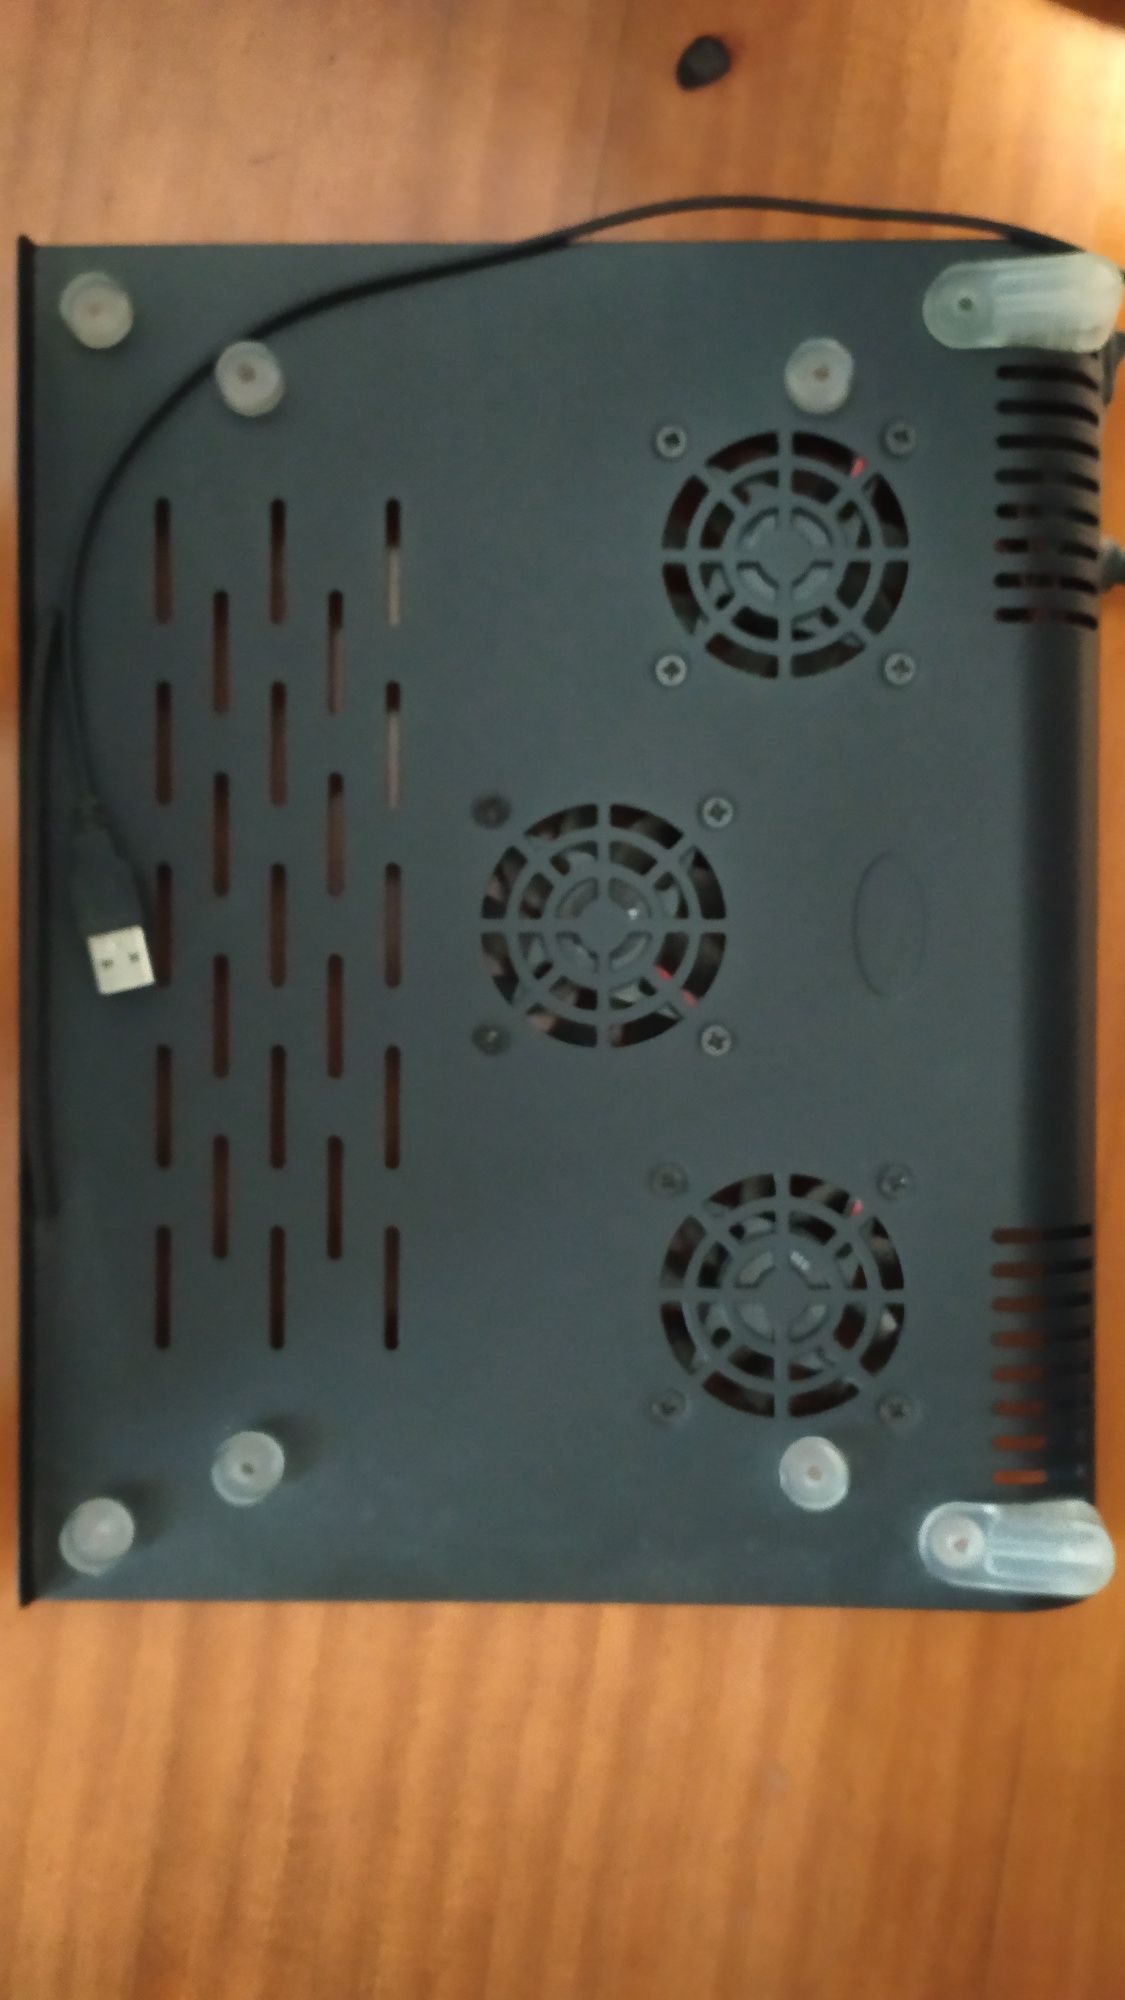 Cooler externo/stand para computador portátil